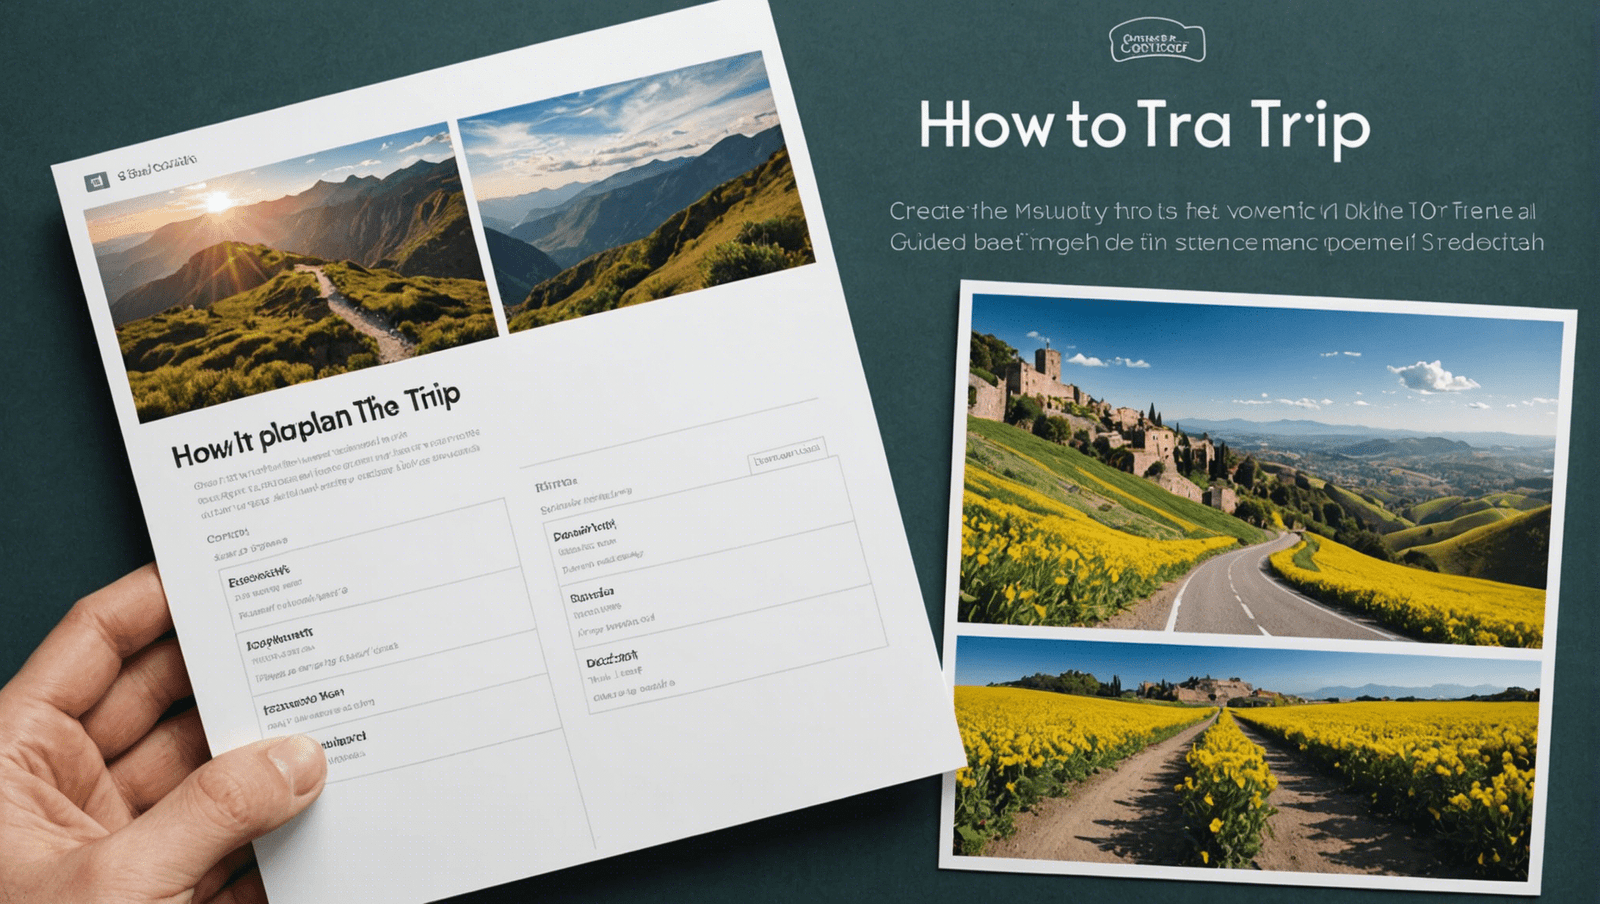 découvrez comment planifier un voyage mois par mois grâce à ce guide complet qui vous accompagnera dans l'organisation de vos prochaines vacances.